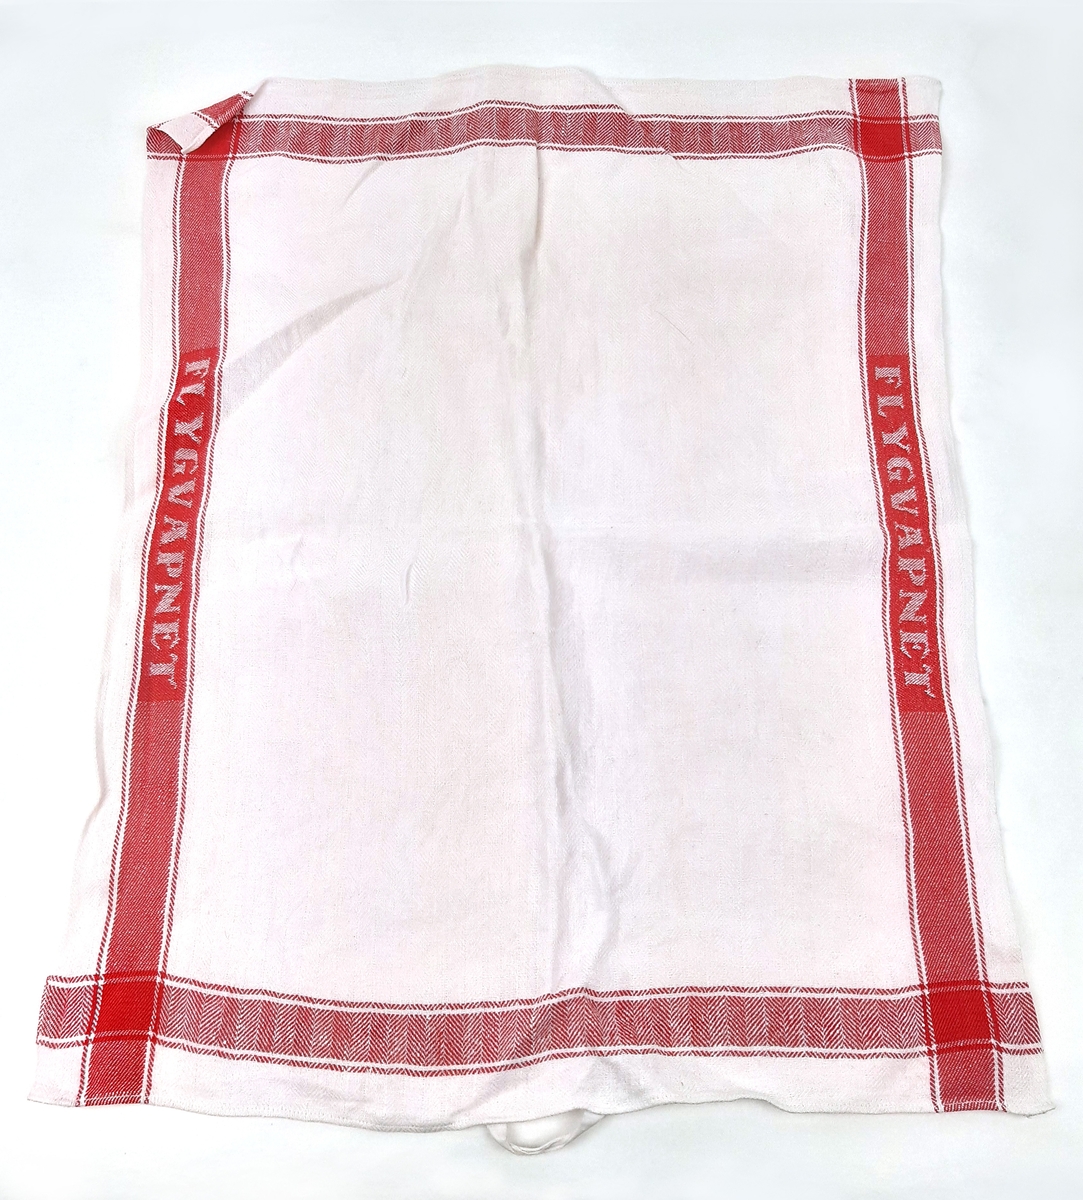 Linnehandduk i vit textil med röda bårder, samt invävd text "FLYGVAPNET".
